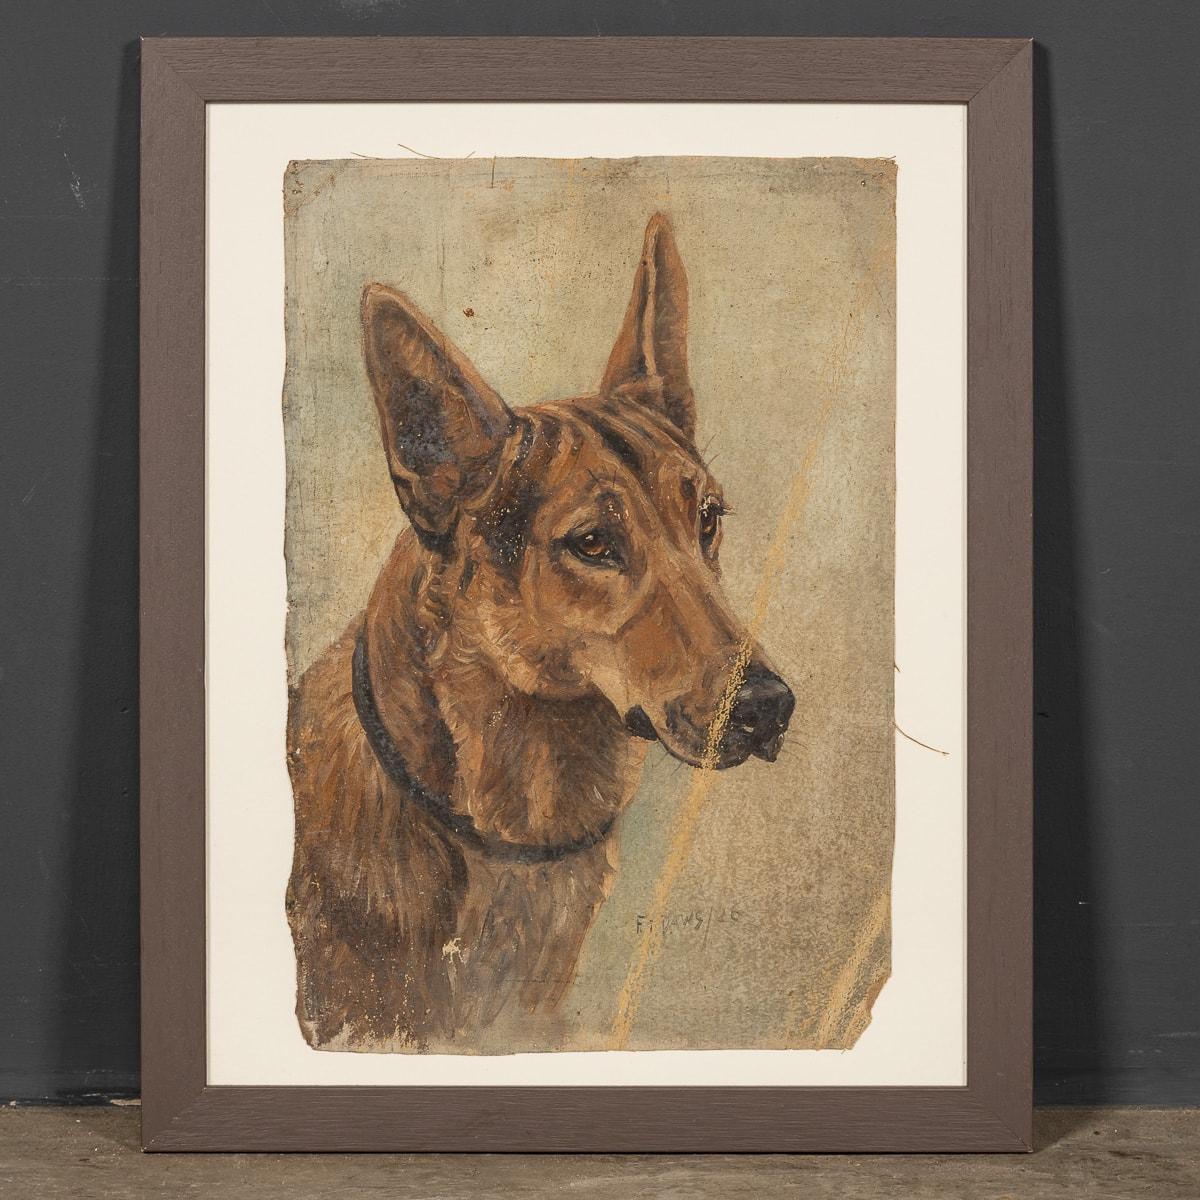 Une ancienne huile sur toile du 20e siècle de Frederick Thomas Daws représentant un berger allemand datant de 1926. Famed, célèbre pour ses représentations de chiens champions, a commencé cette œuvre mais l'a laissée inachevée. Cette pièce est une